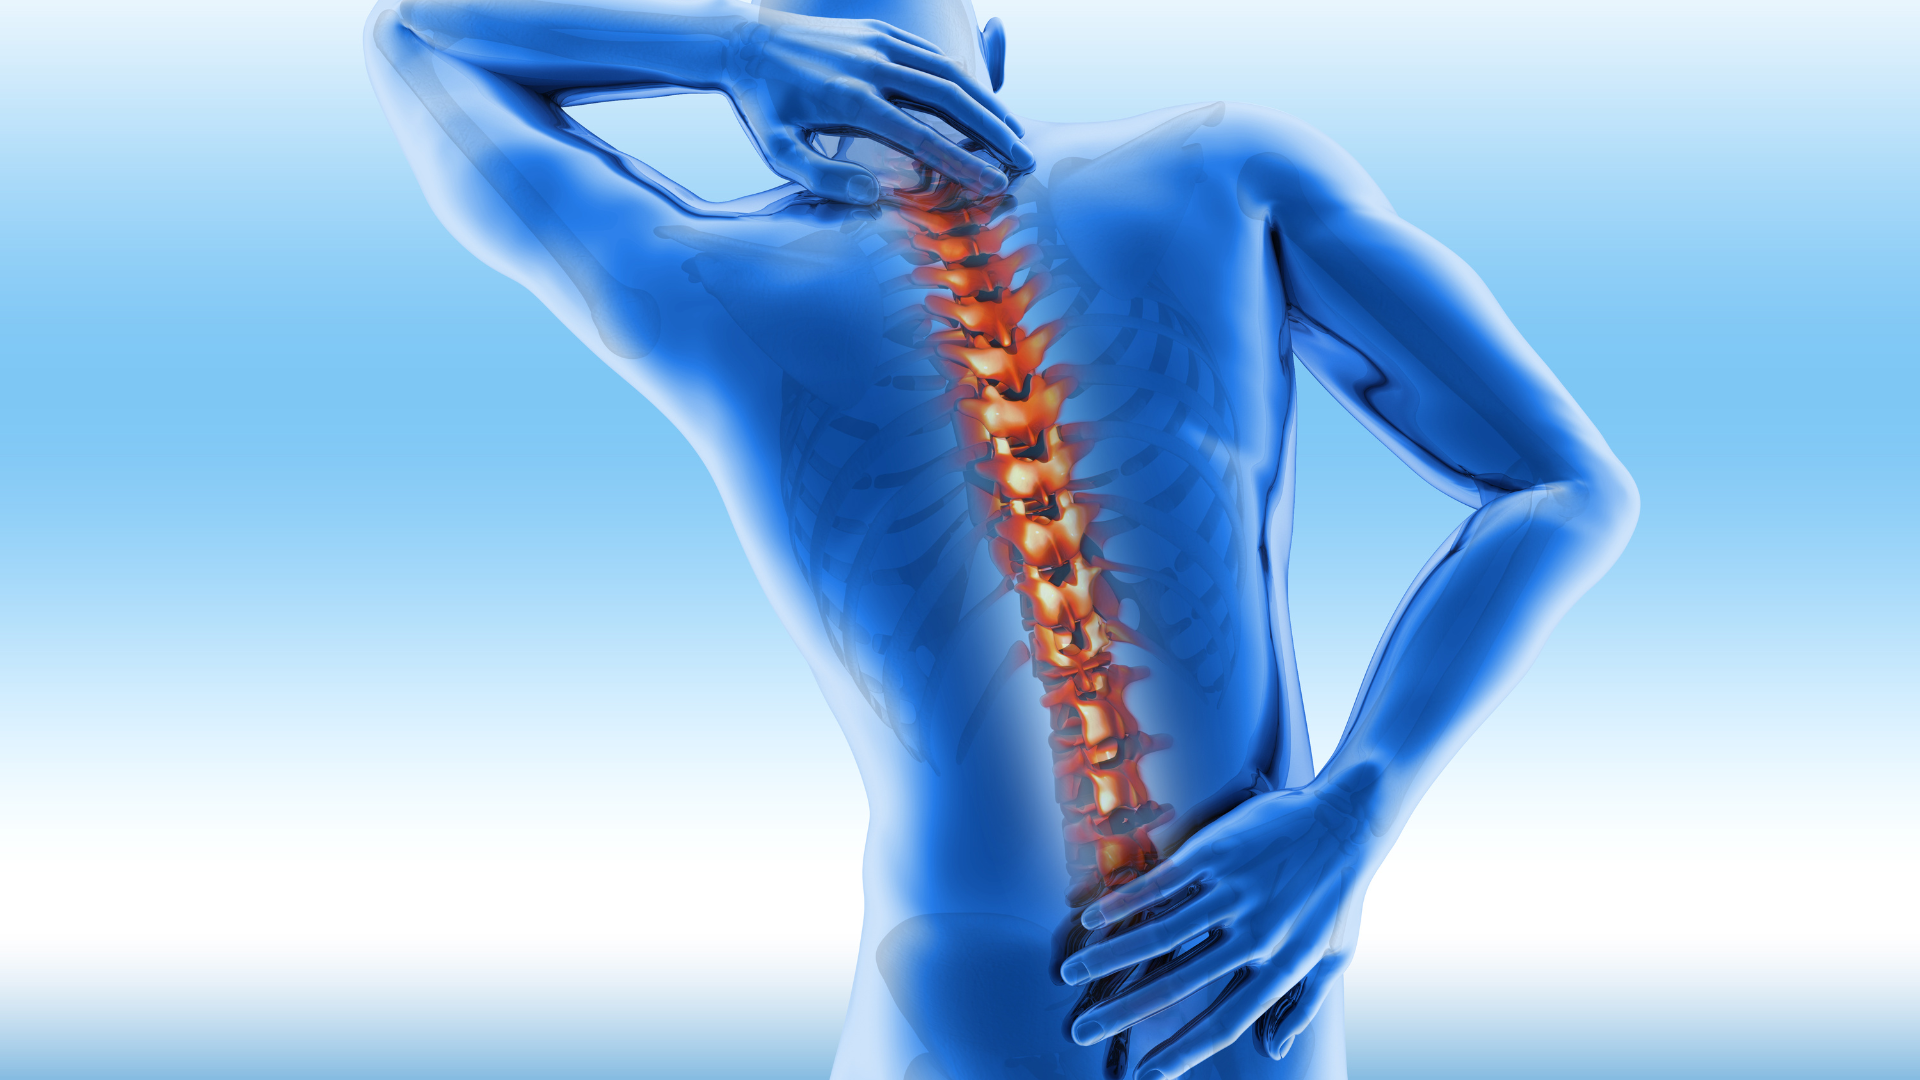 Procedimientos quirúrgicos mínimamente invasivos prometen tratar el dolor de espalda